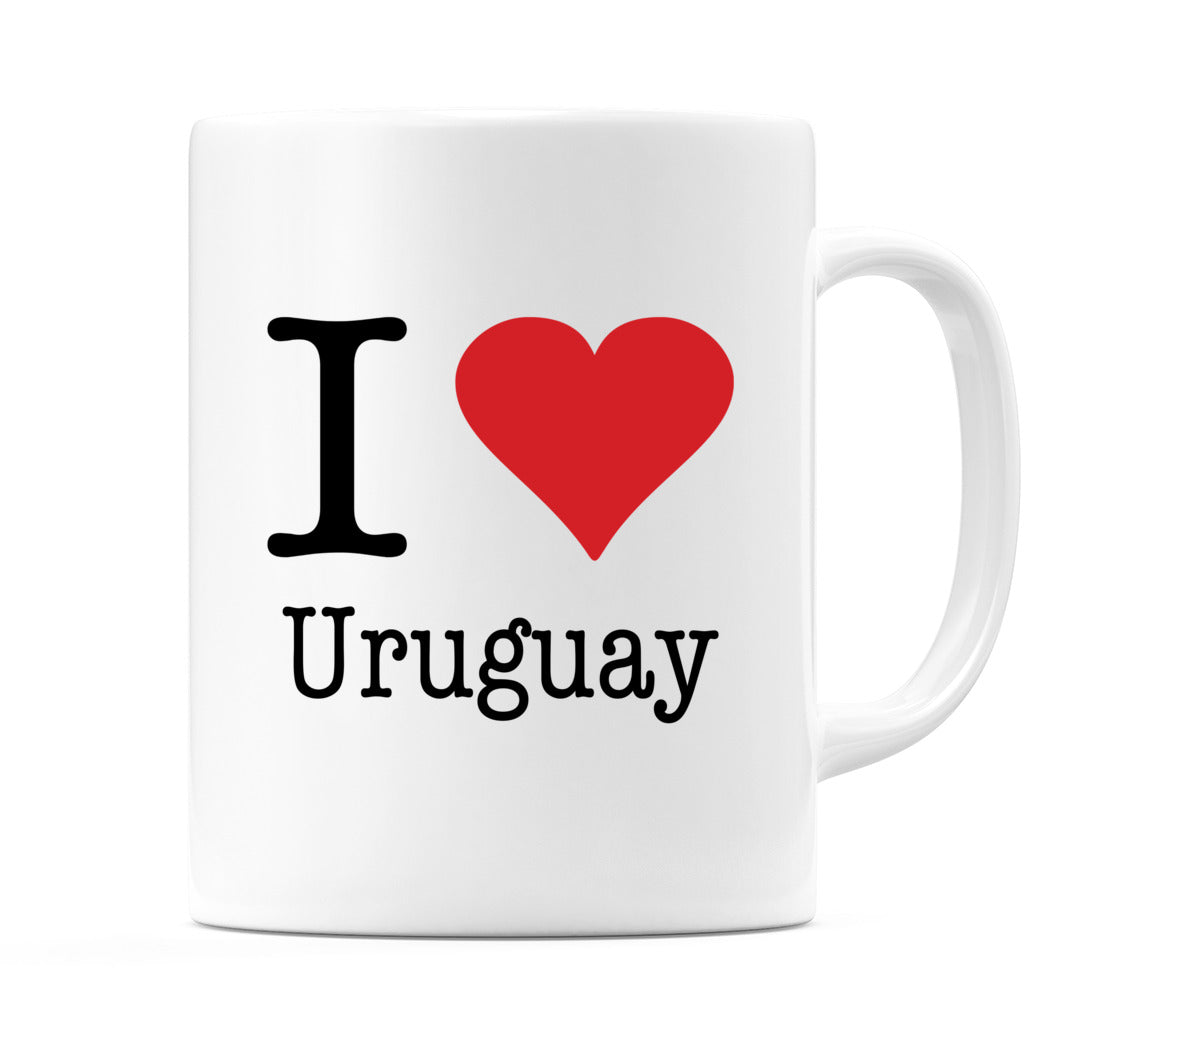 I Love Uruguay Mug